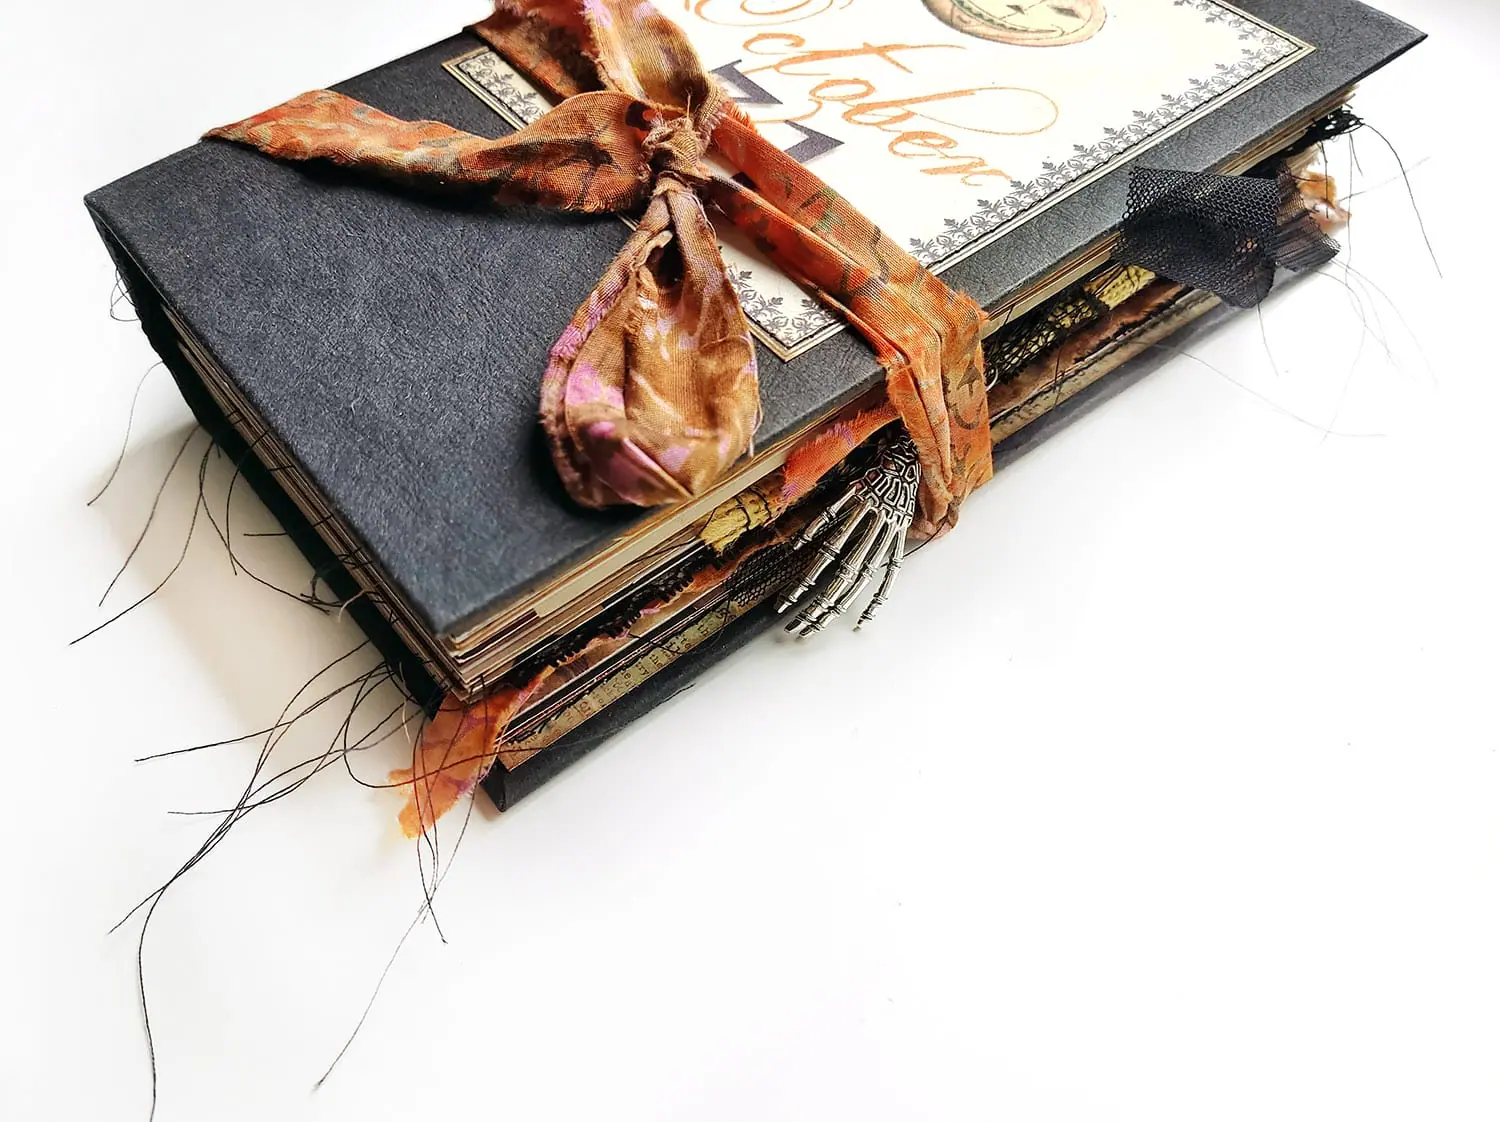 A Handmade Scrapbook Junk Journal Flip through With A Story! 